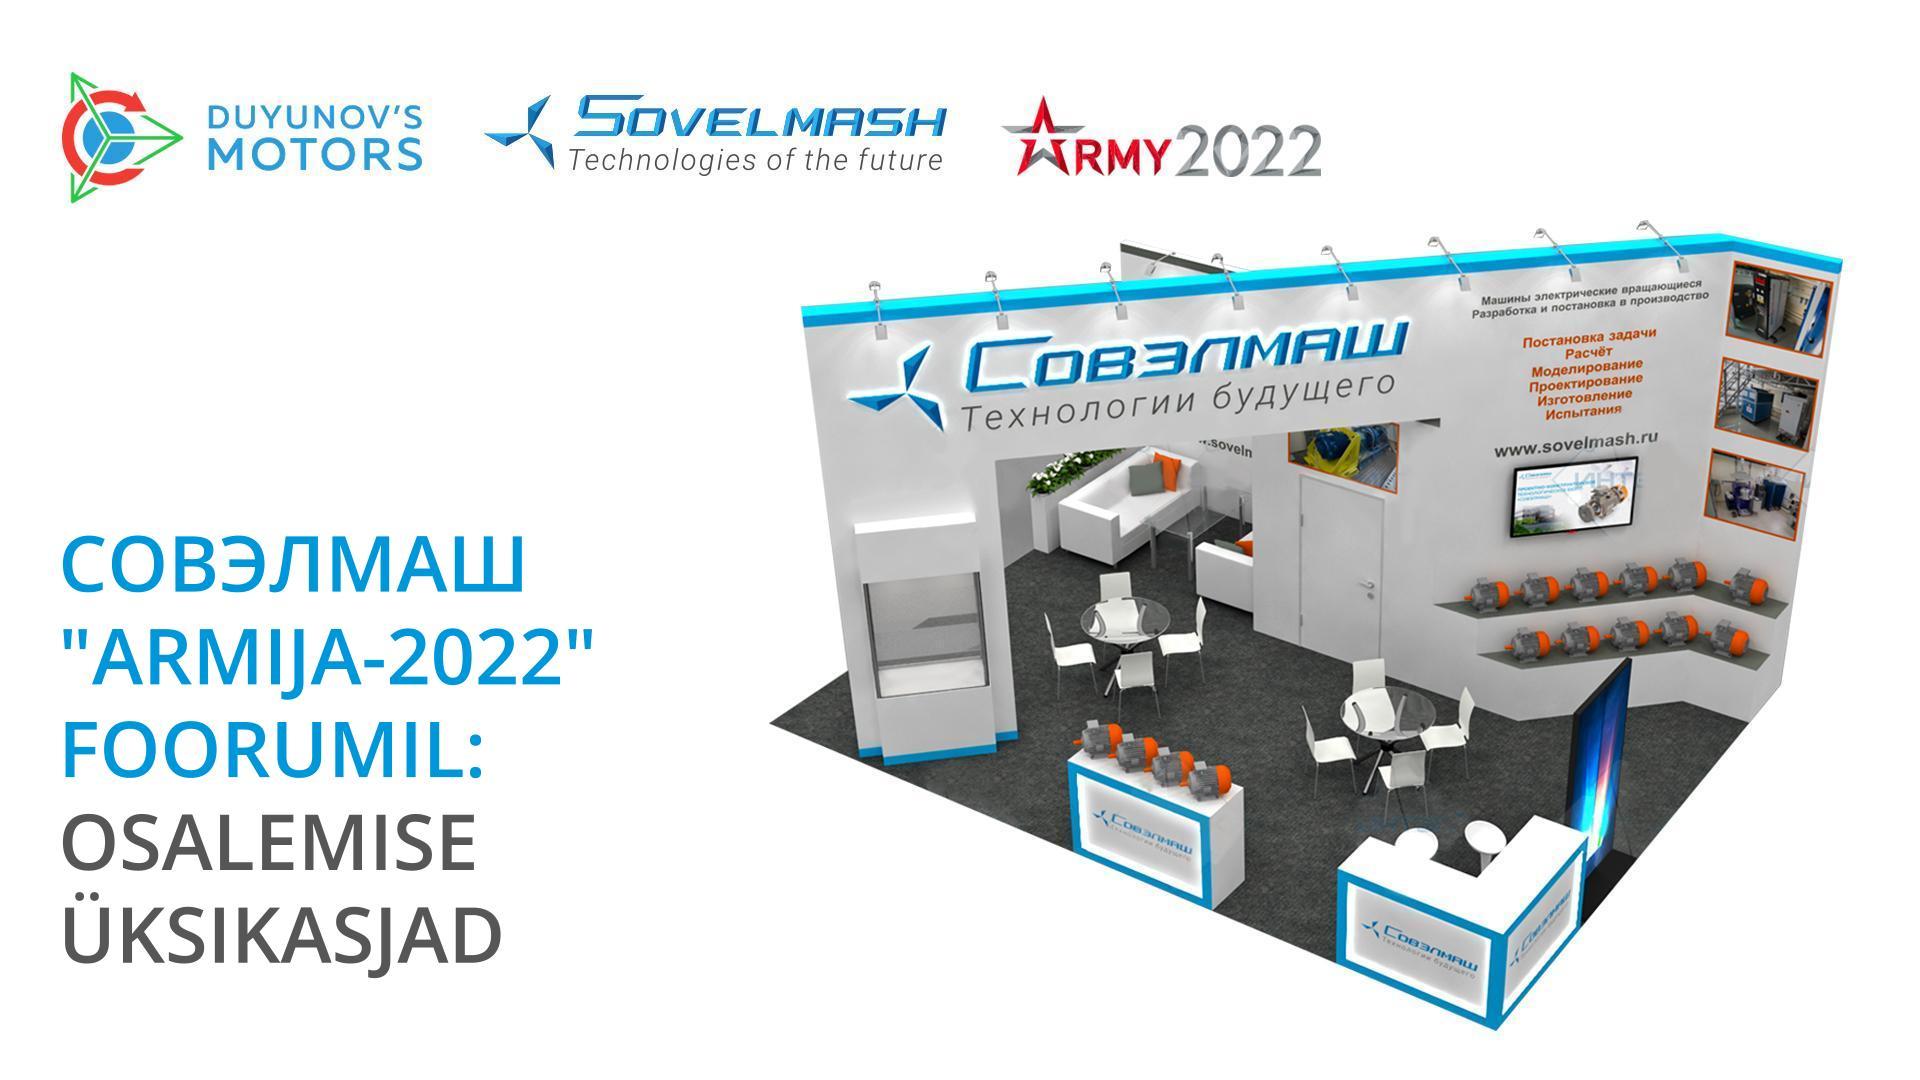 Совэлмаш "Armija-2022" foorumil: osalemise üksikasjad